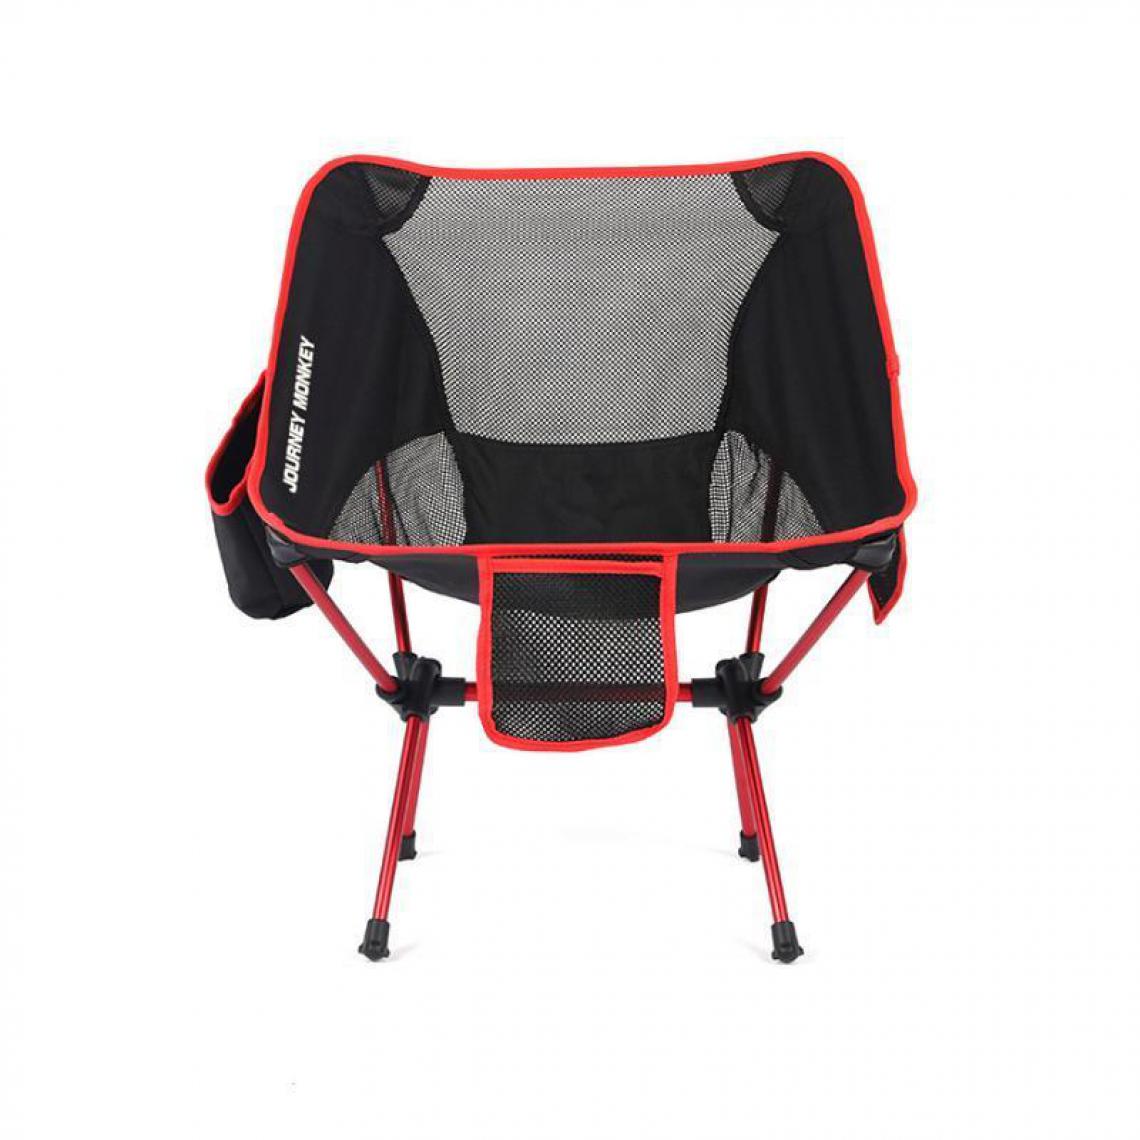 Justgreenbox - Chaise pliante portable extérieure ultralégère charge maximale 120 kg, Rouge - Chaises